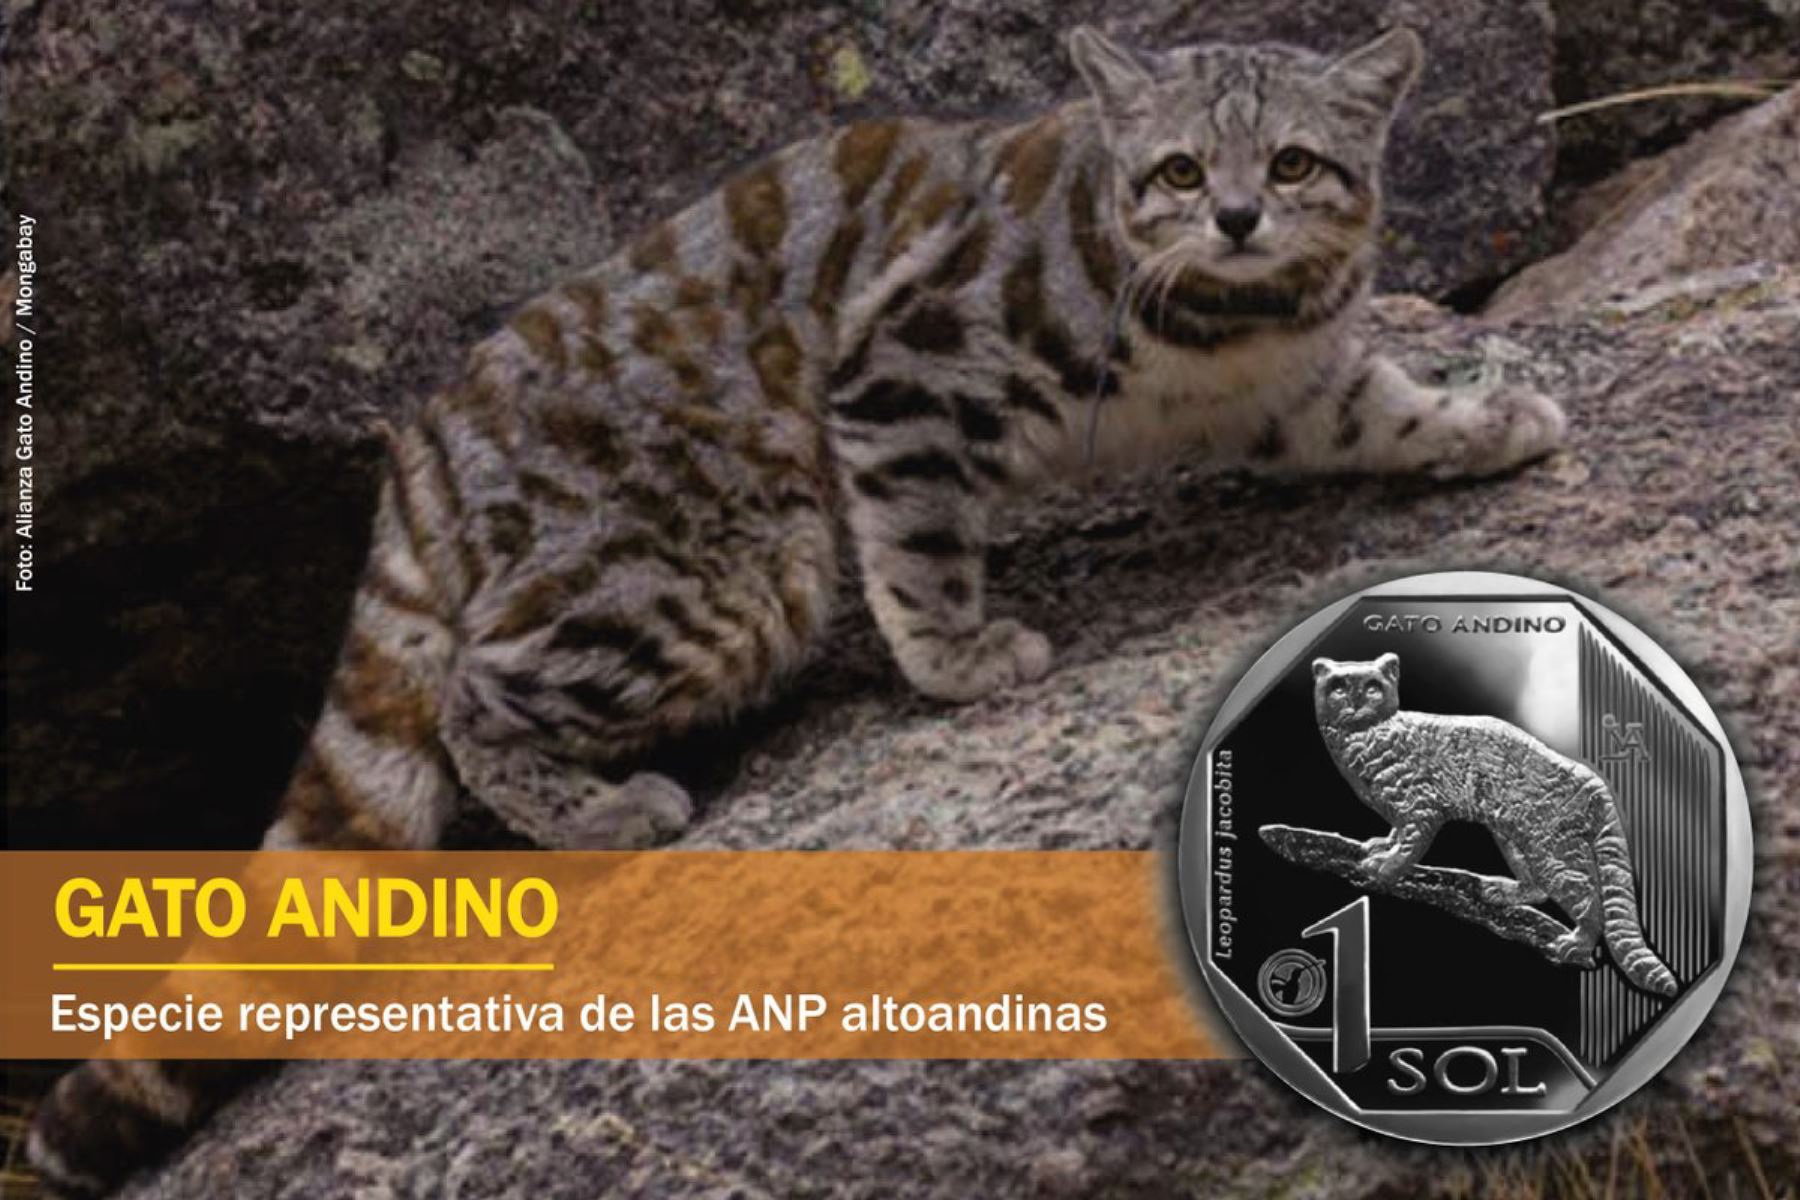 Se estima que en el Perú la población de gato andino no supera los 500 individuos. BCR presentó moneda alusiva a esta especie. ANDINA/Difusión